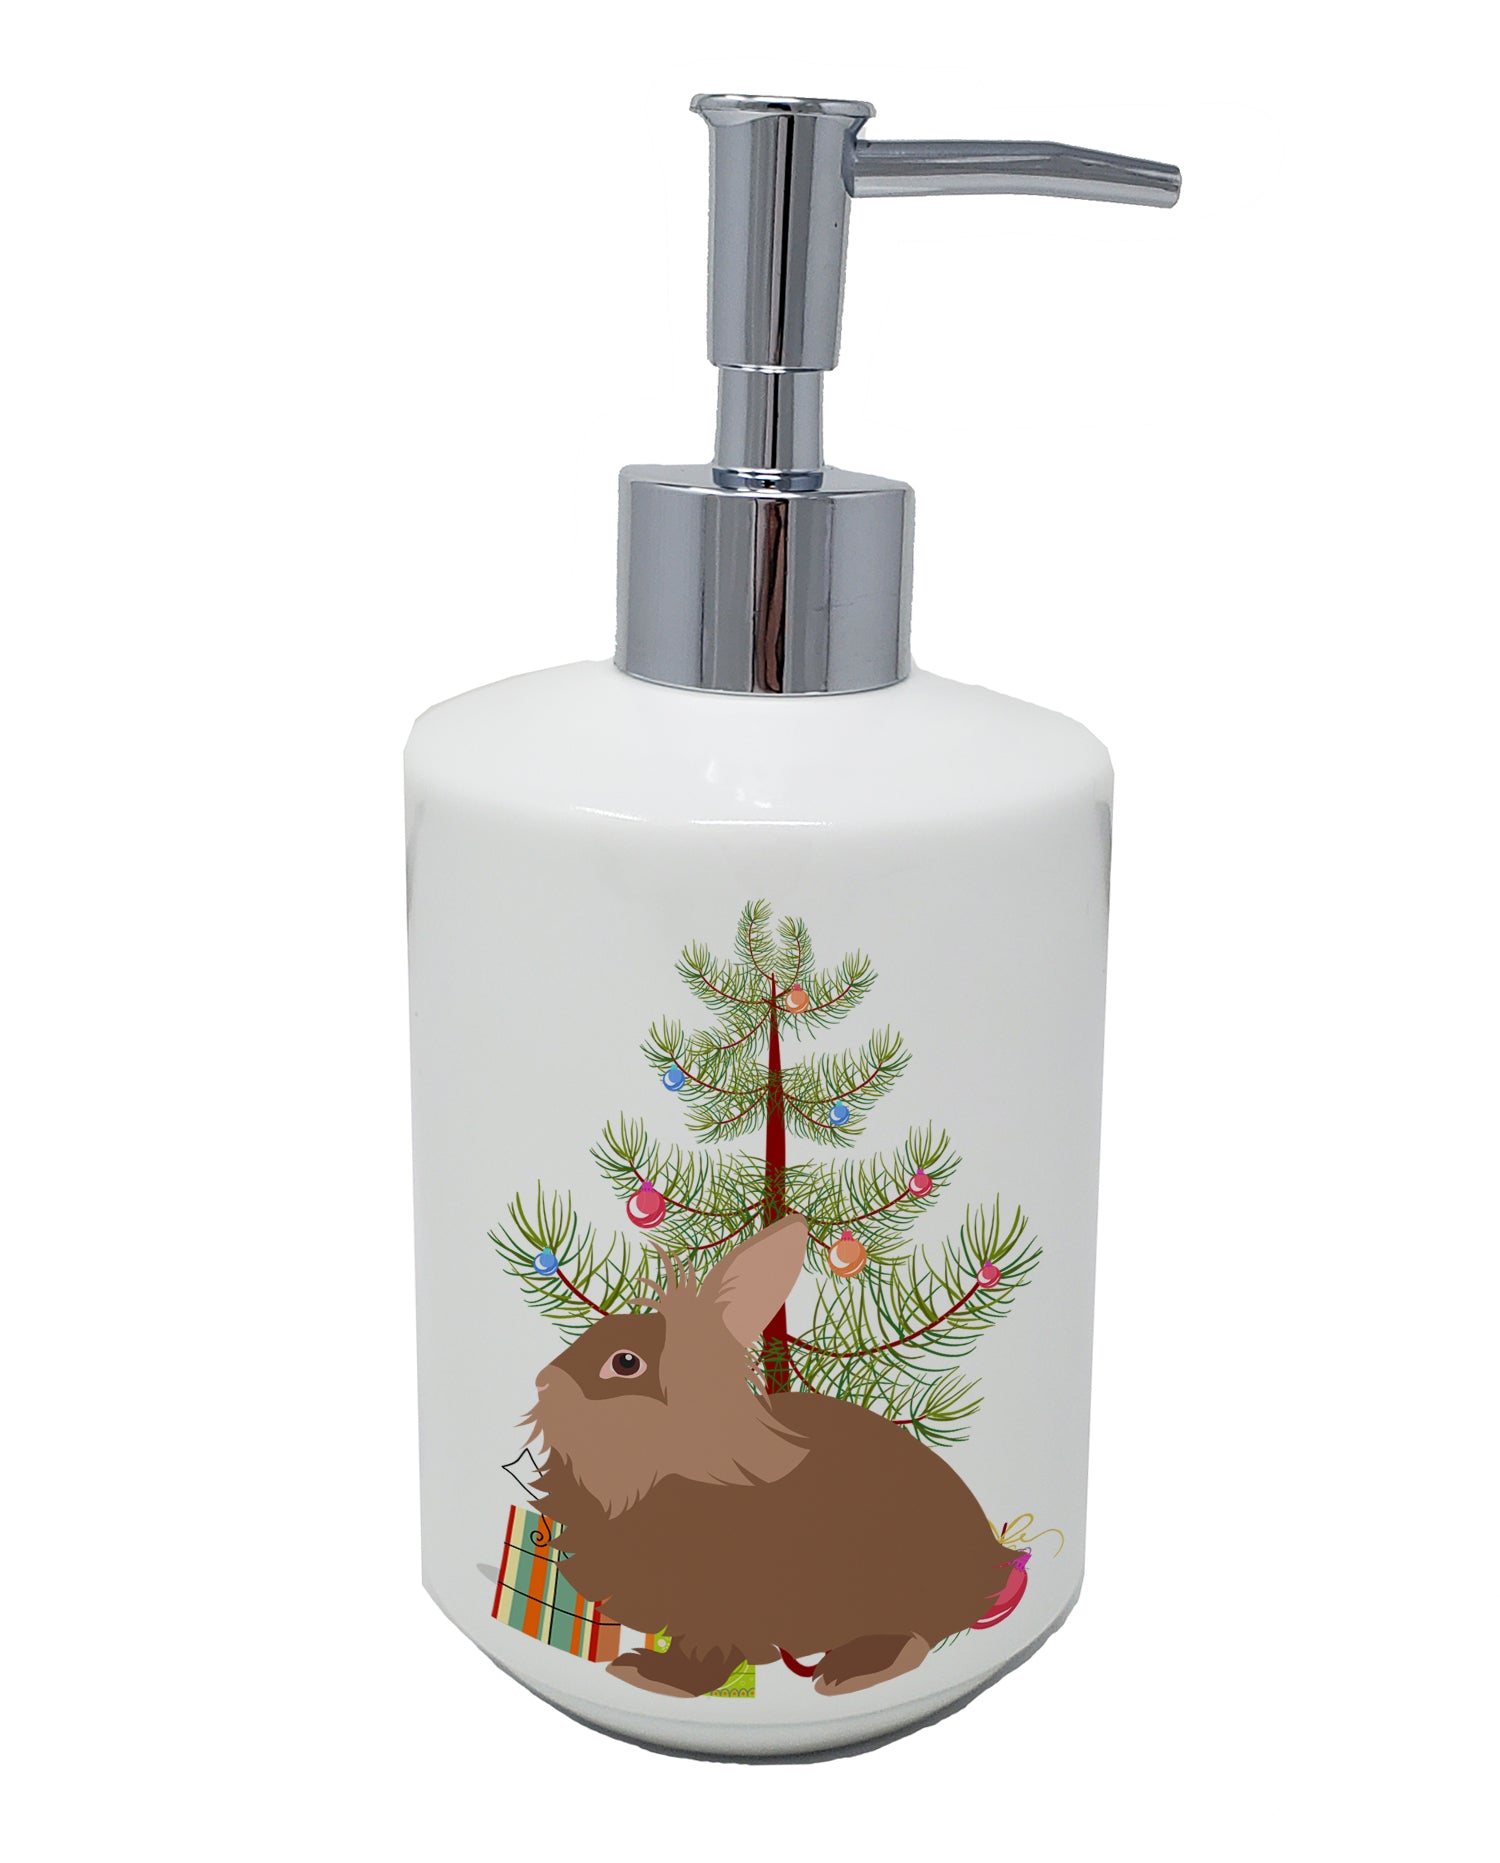 Buy this Lionhead Rabbit Christmas Ceramic Soap Dispenser